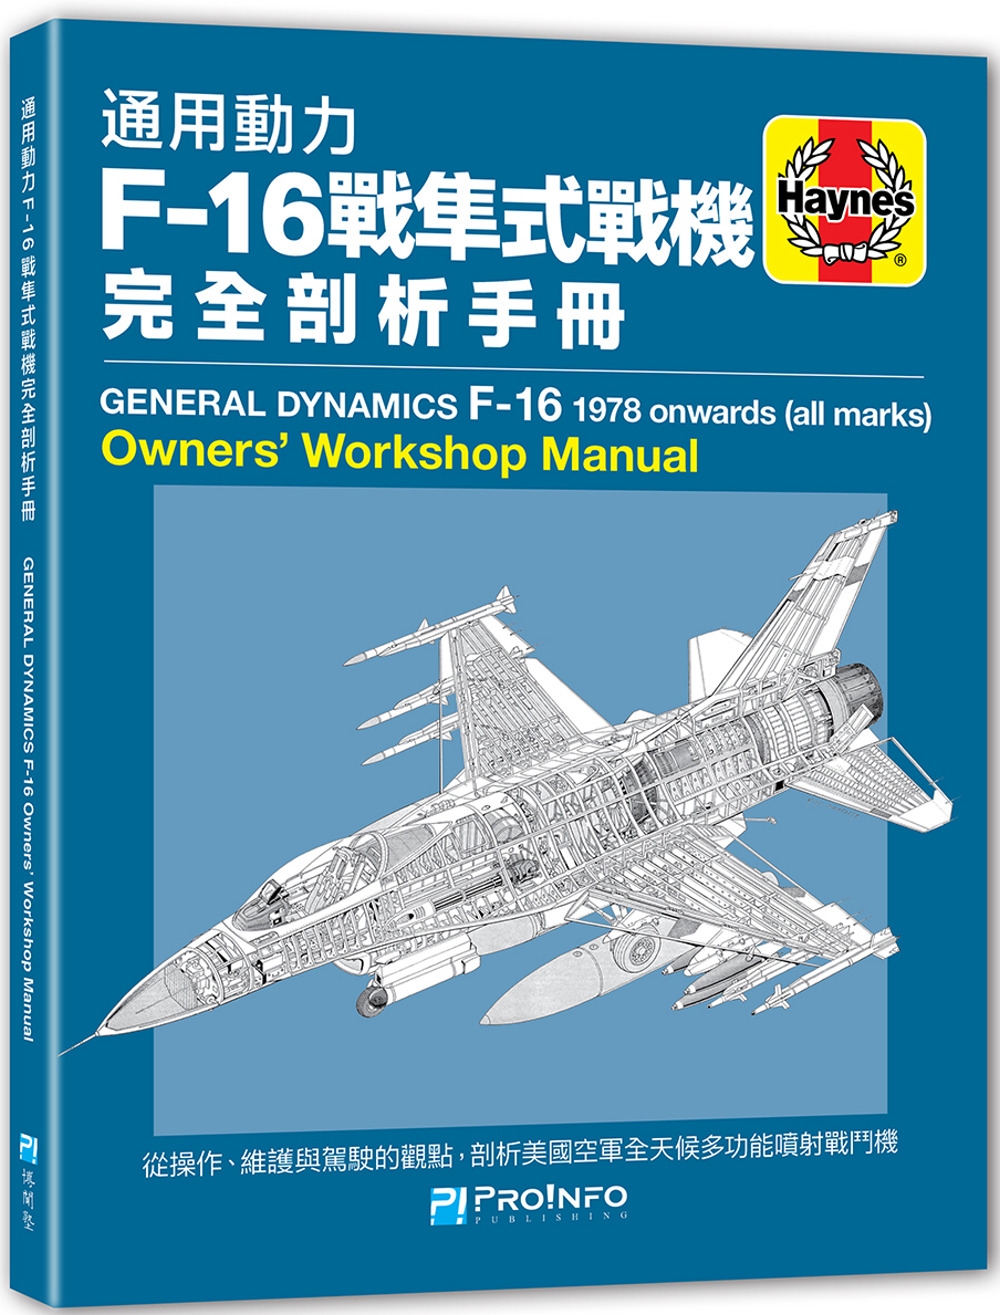 通用動力F-16戰隼式戰機完全剖析手冊